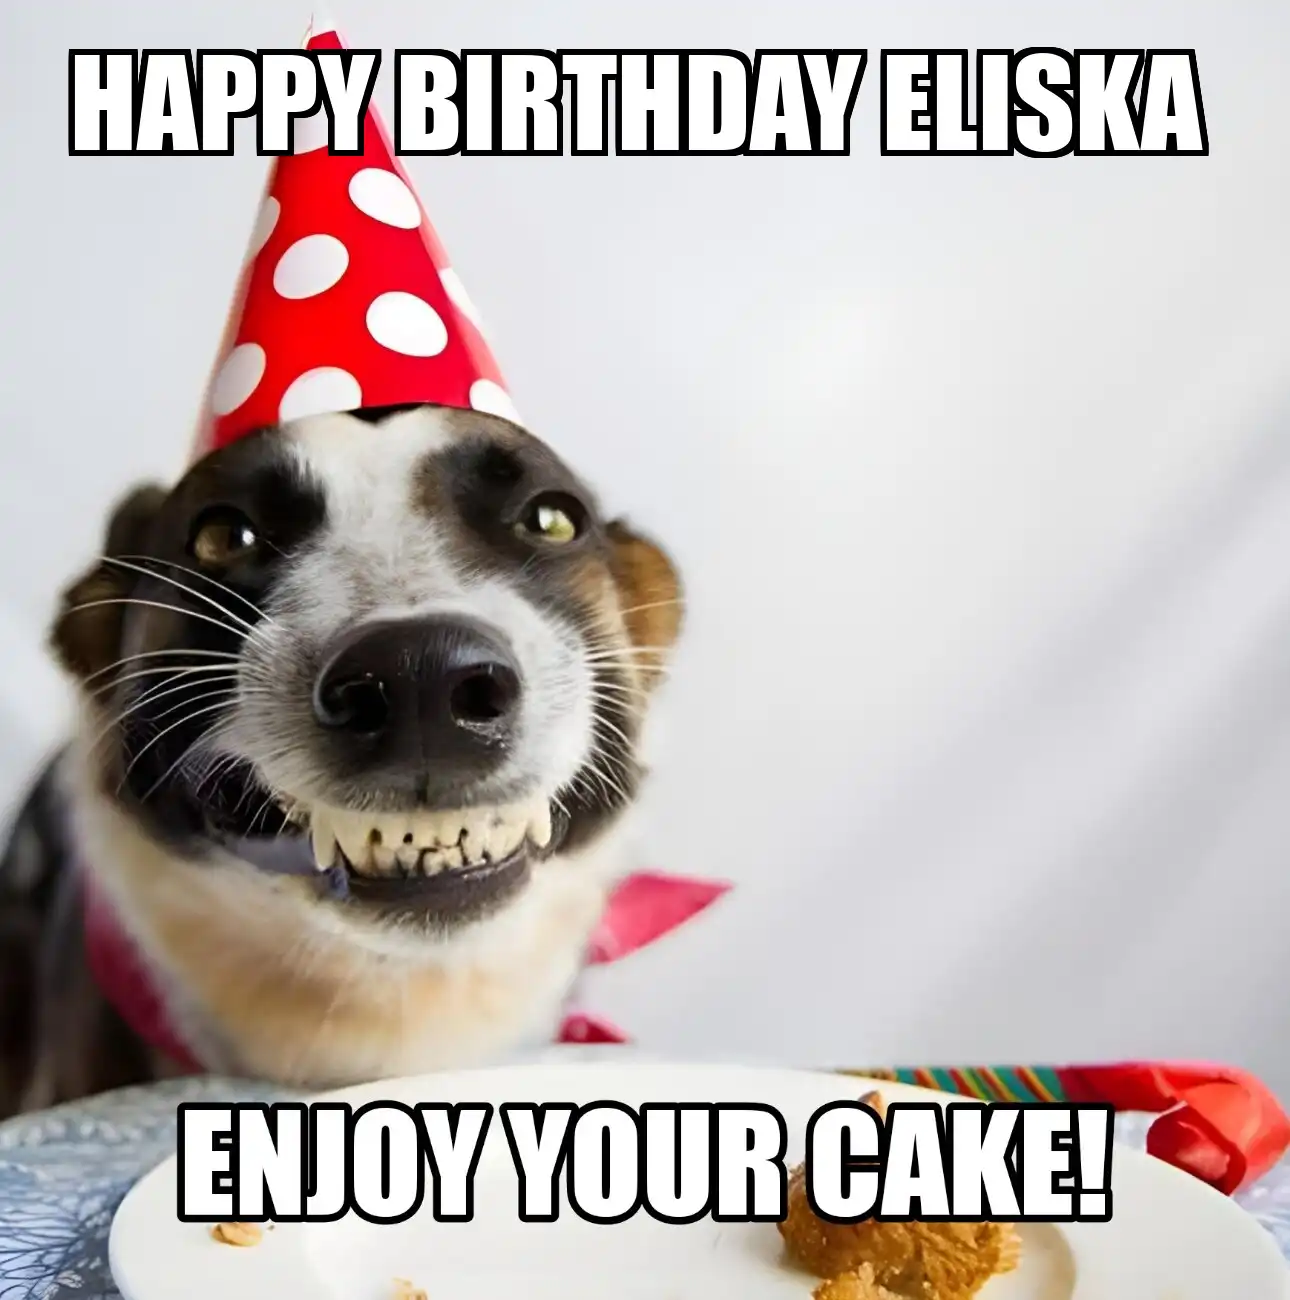 Happy Birthday Eliska Enjoy Your Cake Dog Meme